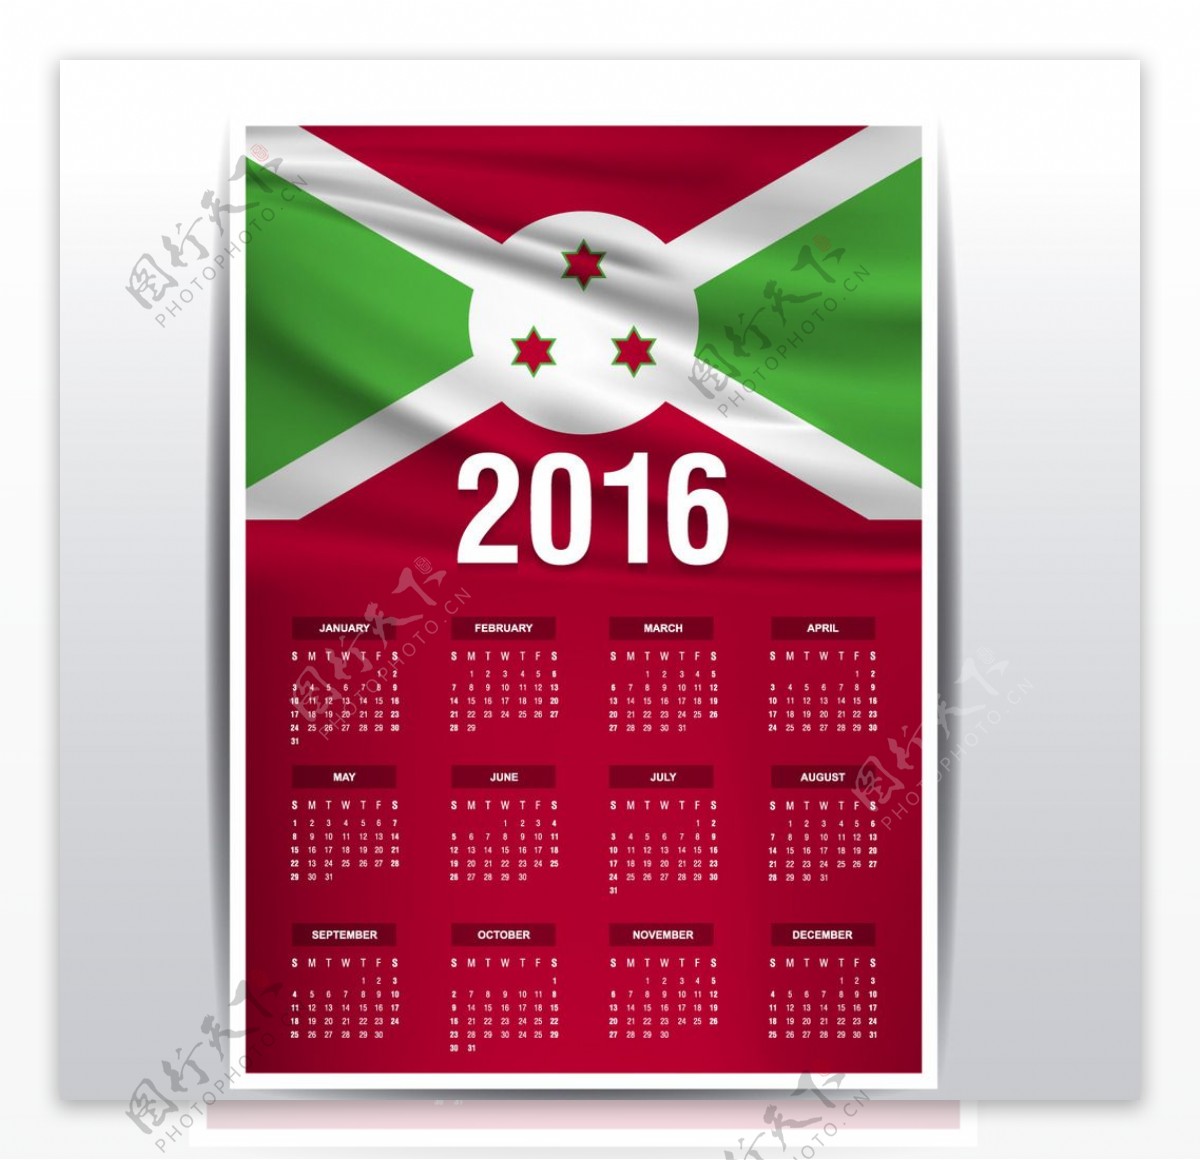 布隆迪国旗日历